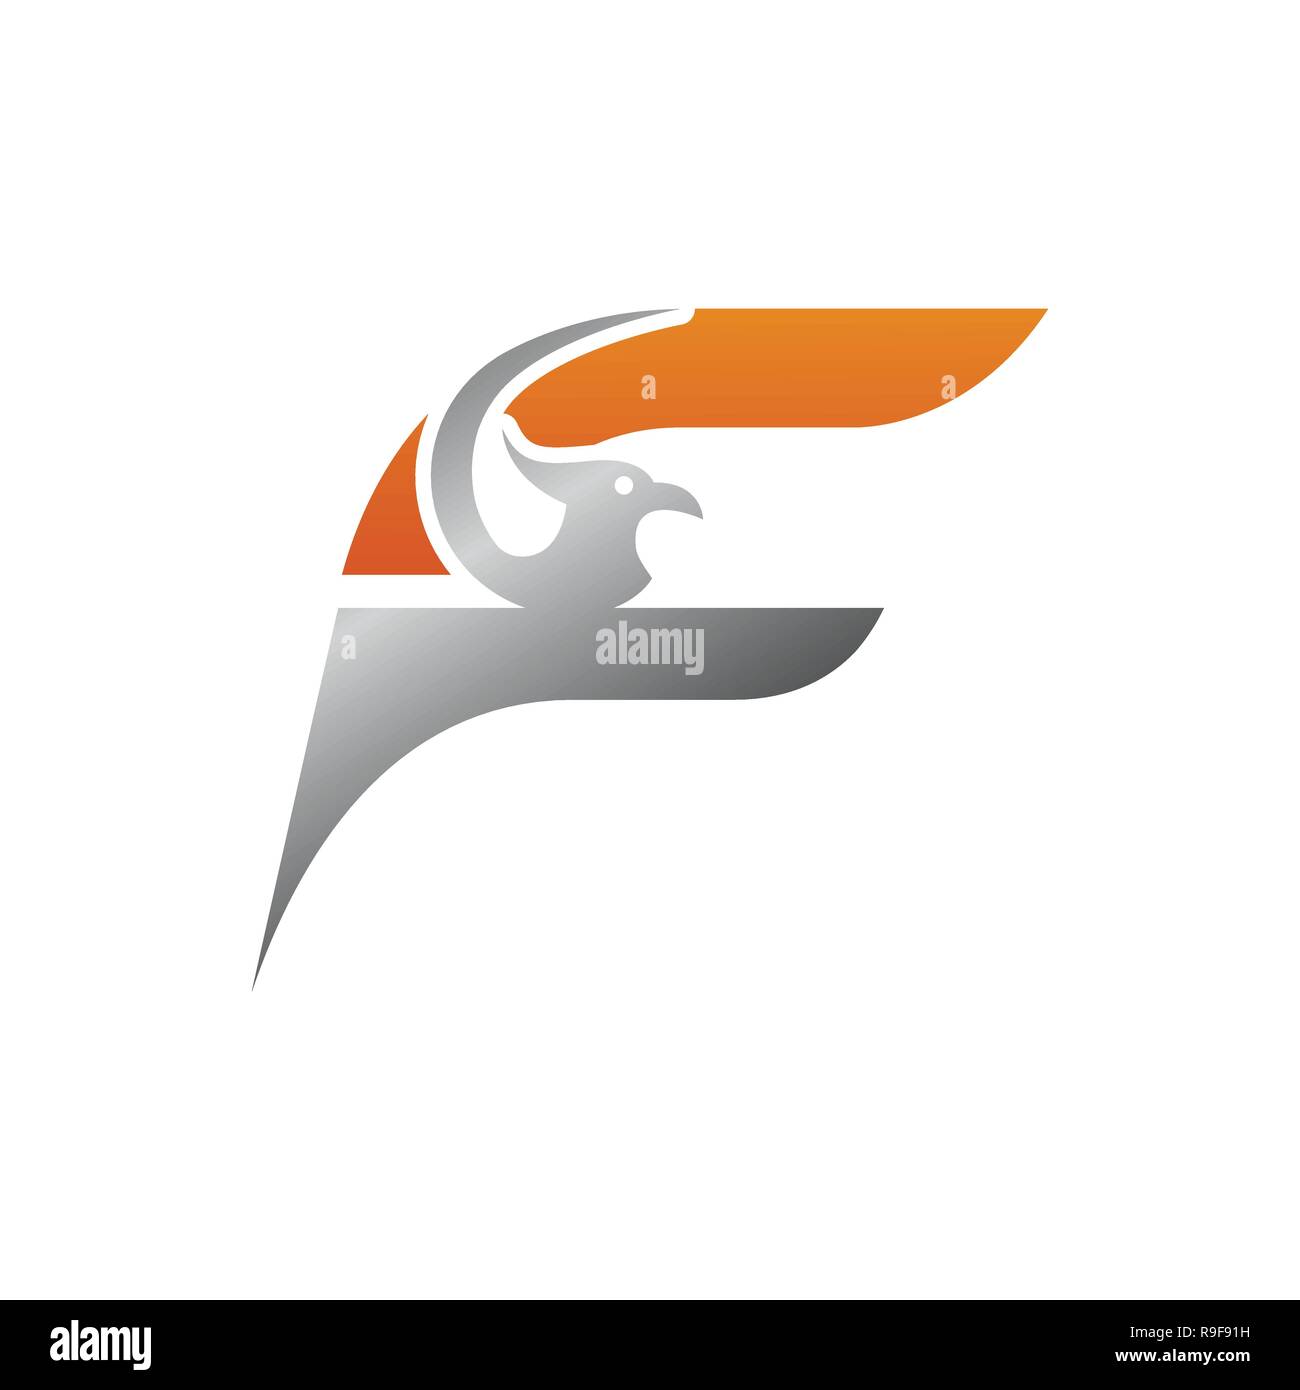 Kreative Anfangsbuchstabe F mit Eagle bird Logo template Vector Illustration, Logo für Corporate Identity der Firma der Buchstabe F, typographische Schrift Stock Vektor